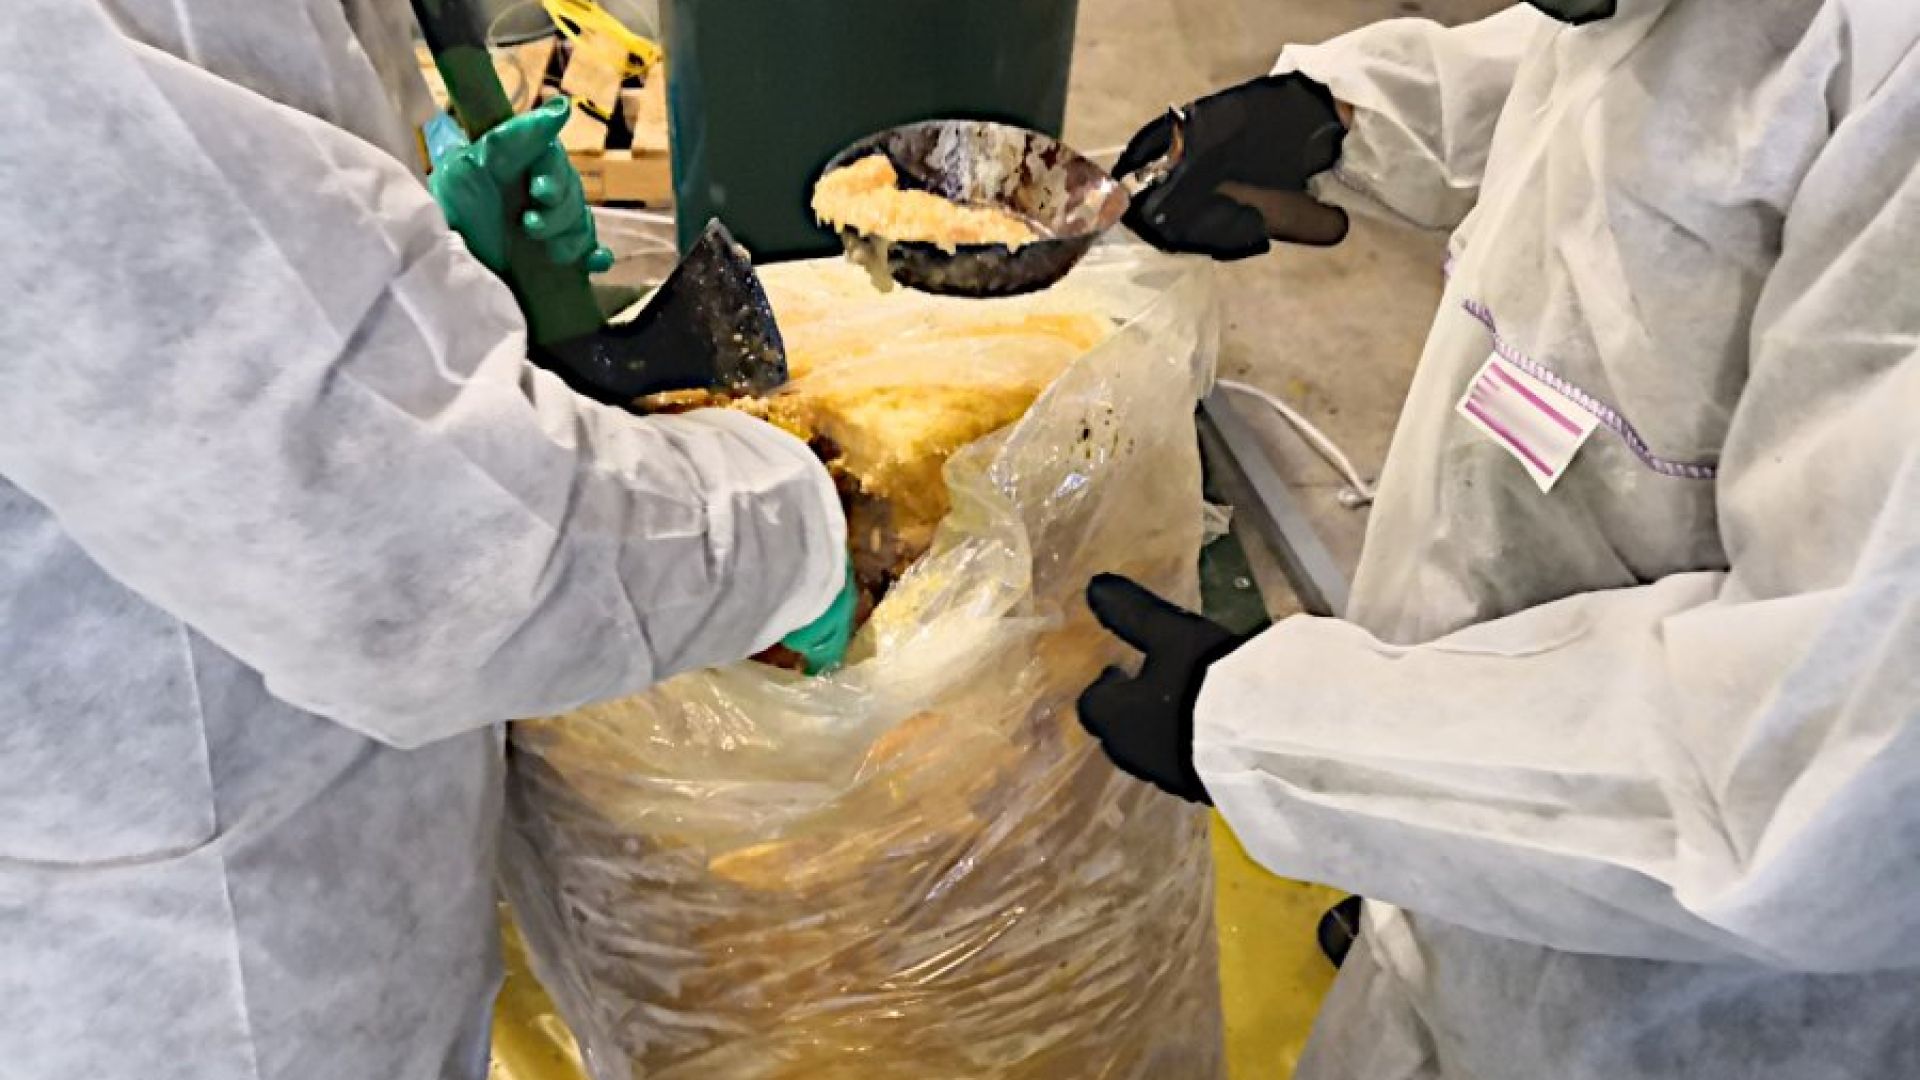 Откриха 3 тона кокаин в контейнери със замразена пулпа от ананас в Полша (снимки)